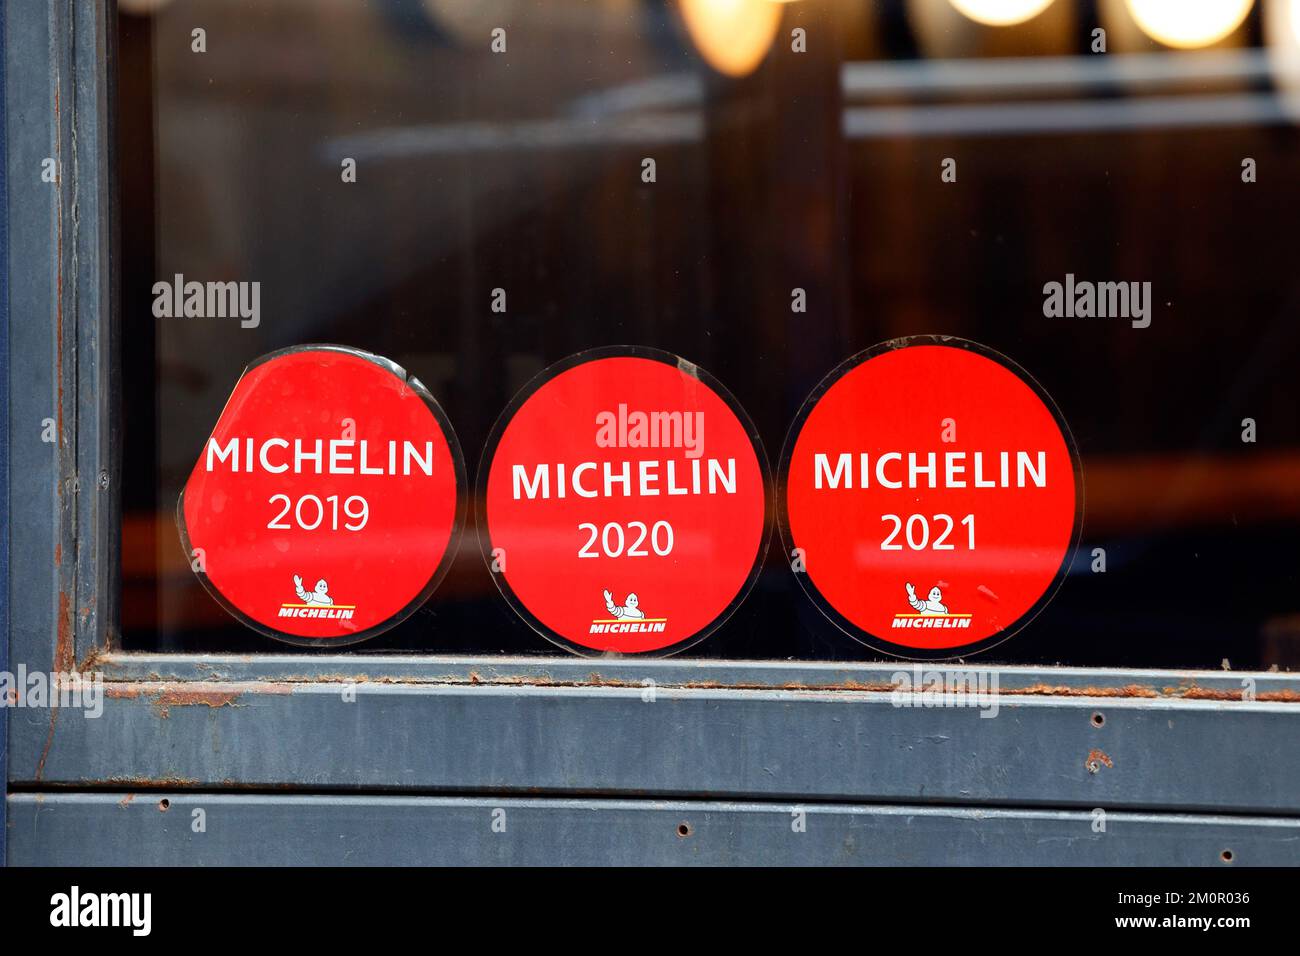 Adesivi di valutazione della guida Michelin sulla finestra di un ristorante Foto Stock